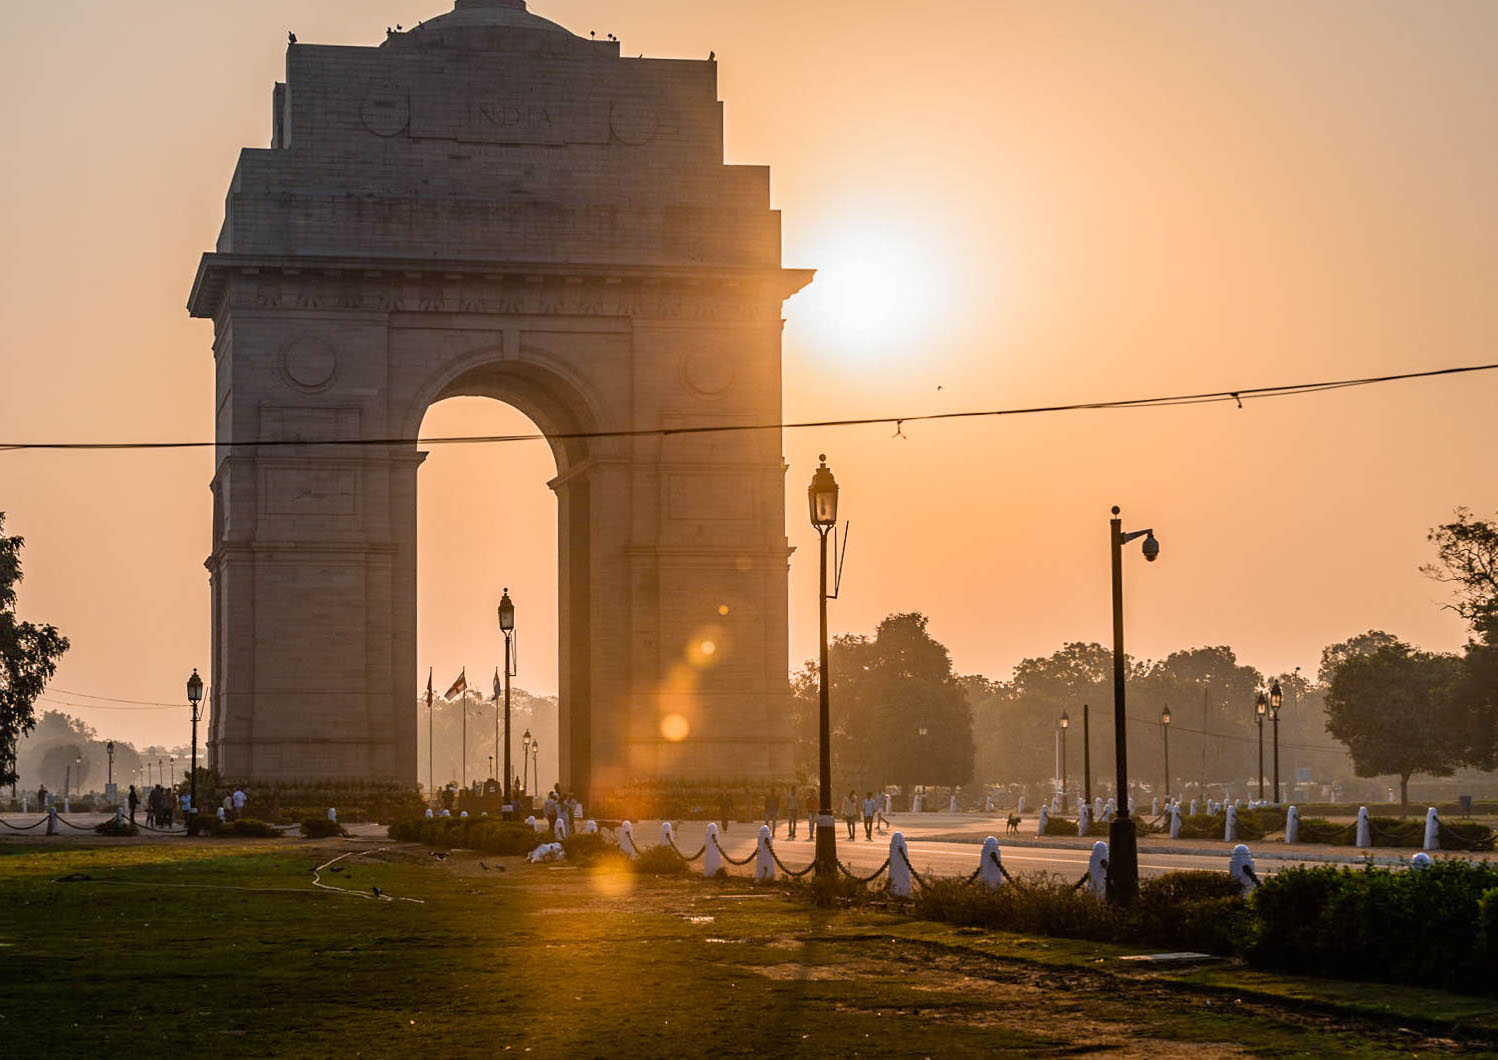 Co warto zobaczyć w Indiach - Delhi - blog podrozniczy